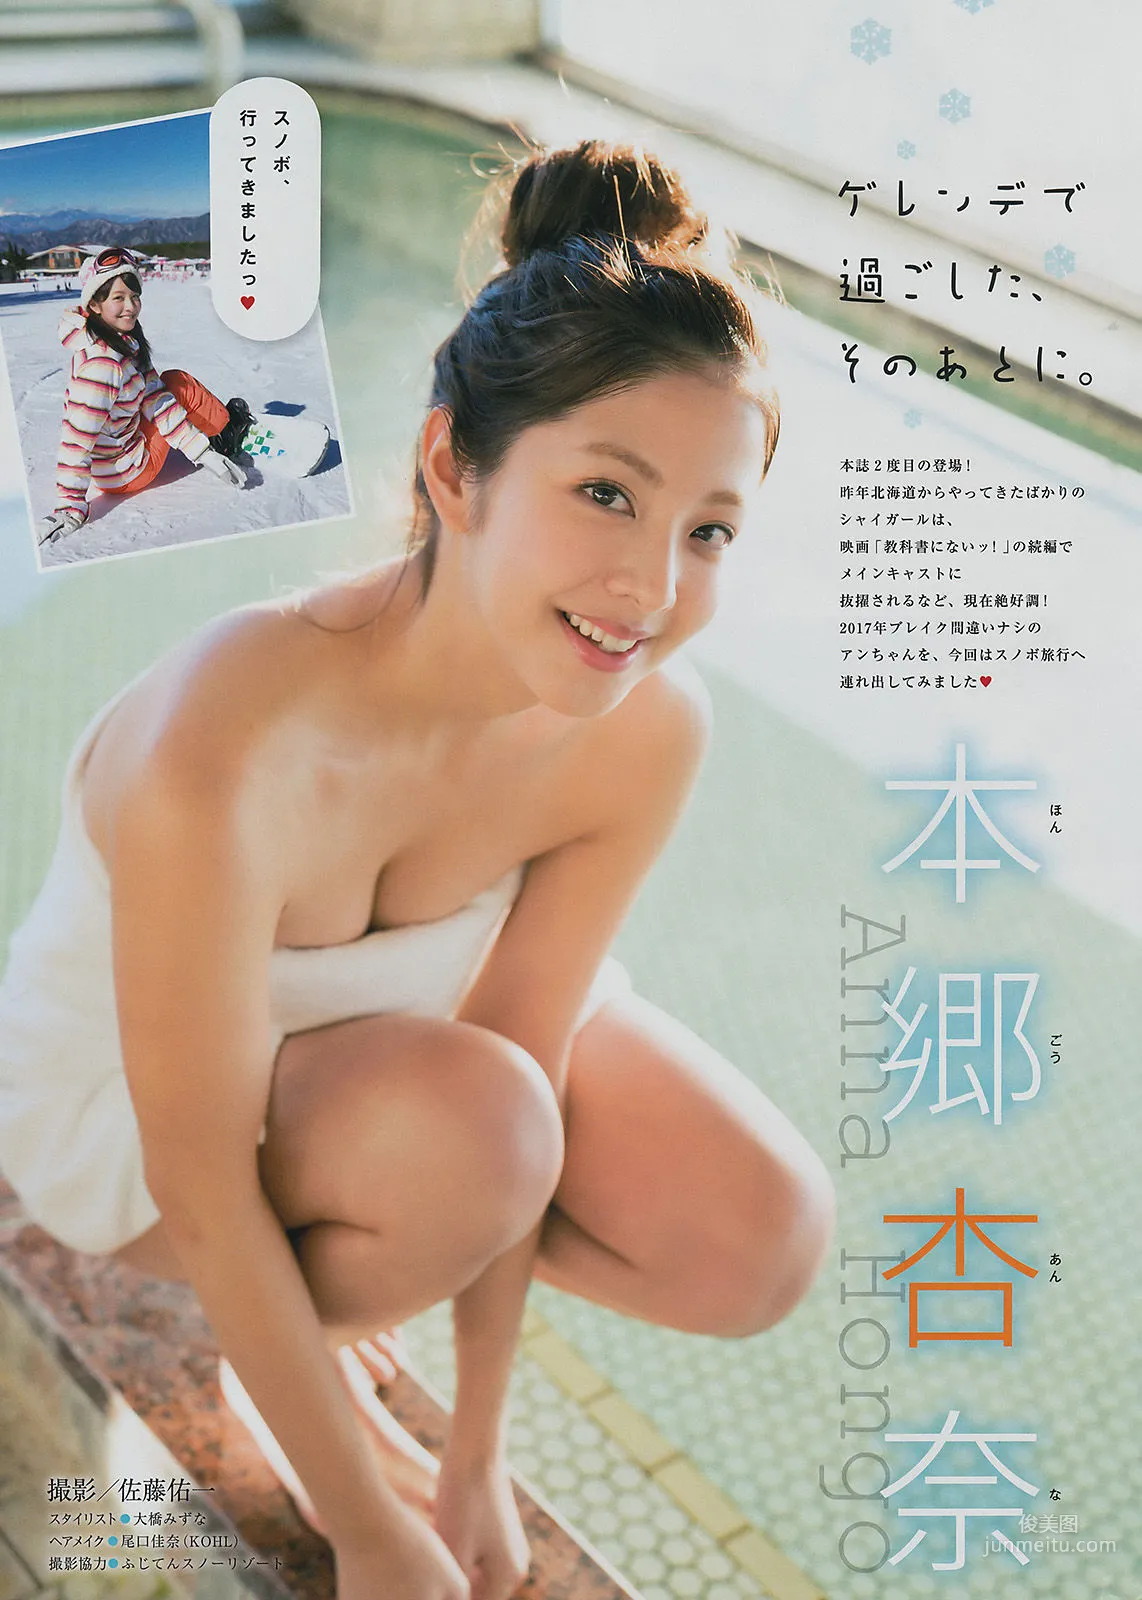 [Young Magazine] 牧野真莉愛 本郷杏奈 2017年No.14 写真杂志9